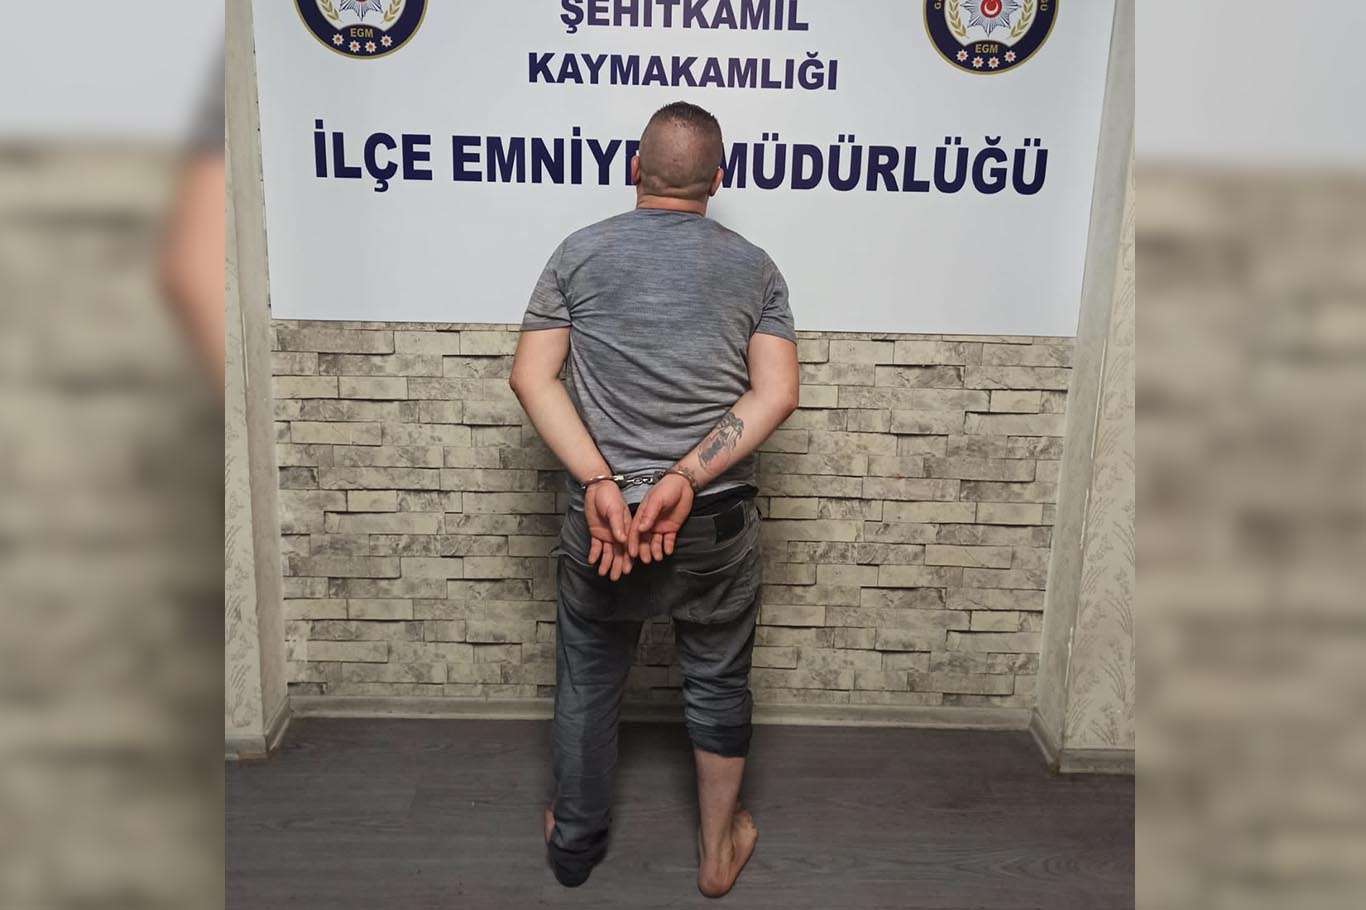 Gaziantep'te 44 suç kaydı bulunan şahıs yakalandı